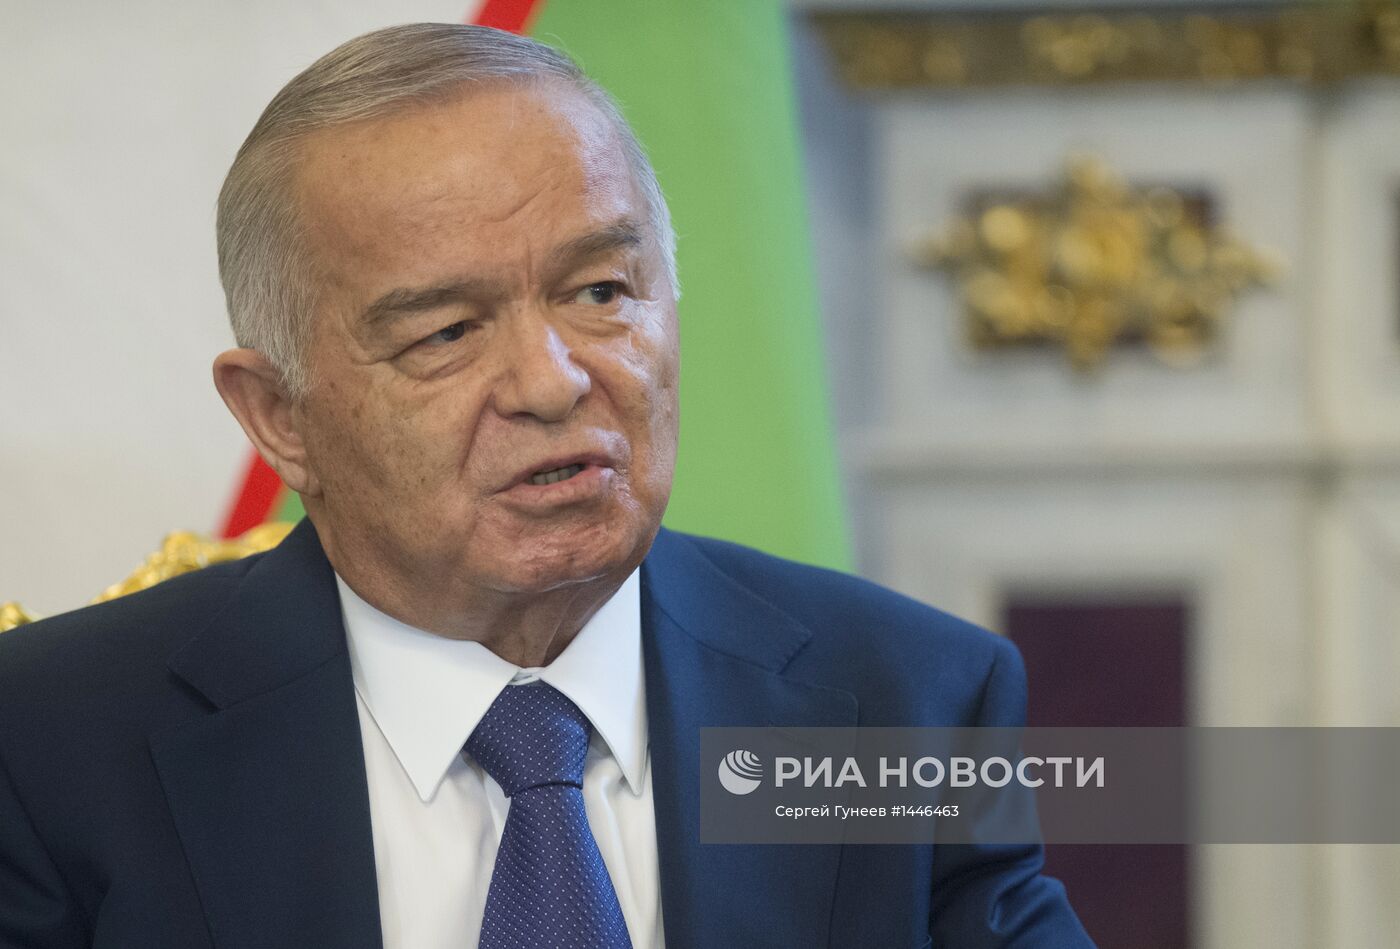 Визит президента республики Узбекистан И. Каримова в РФ